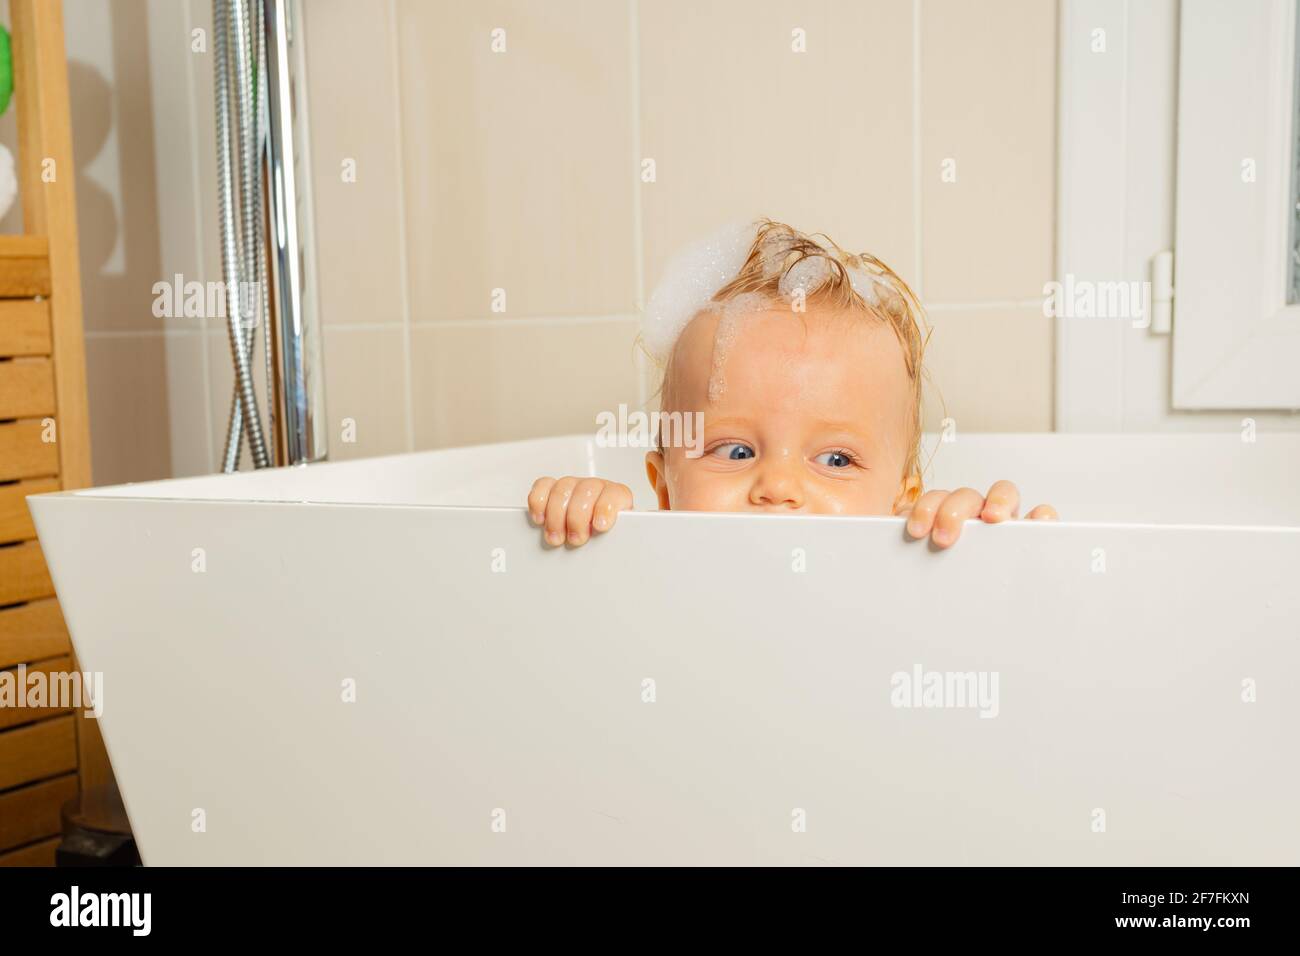 Un petit garçon joue à cache et cherche dans une baignoire Photo Stock -  Alamy